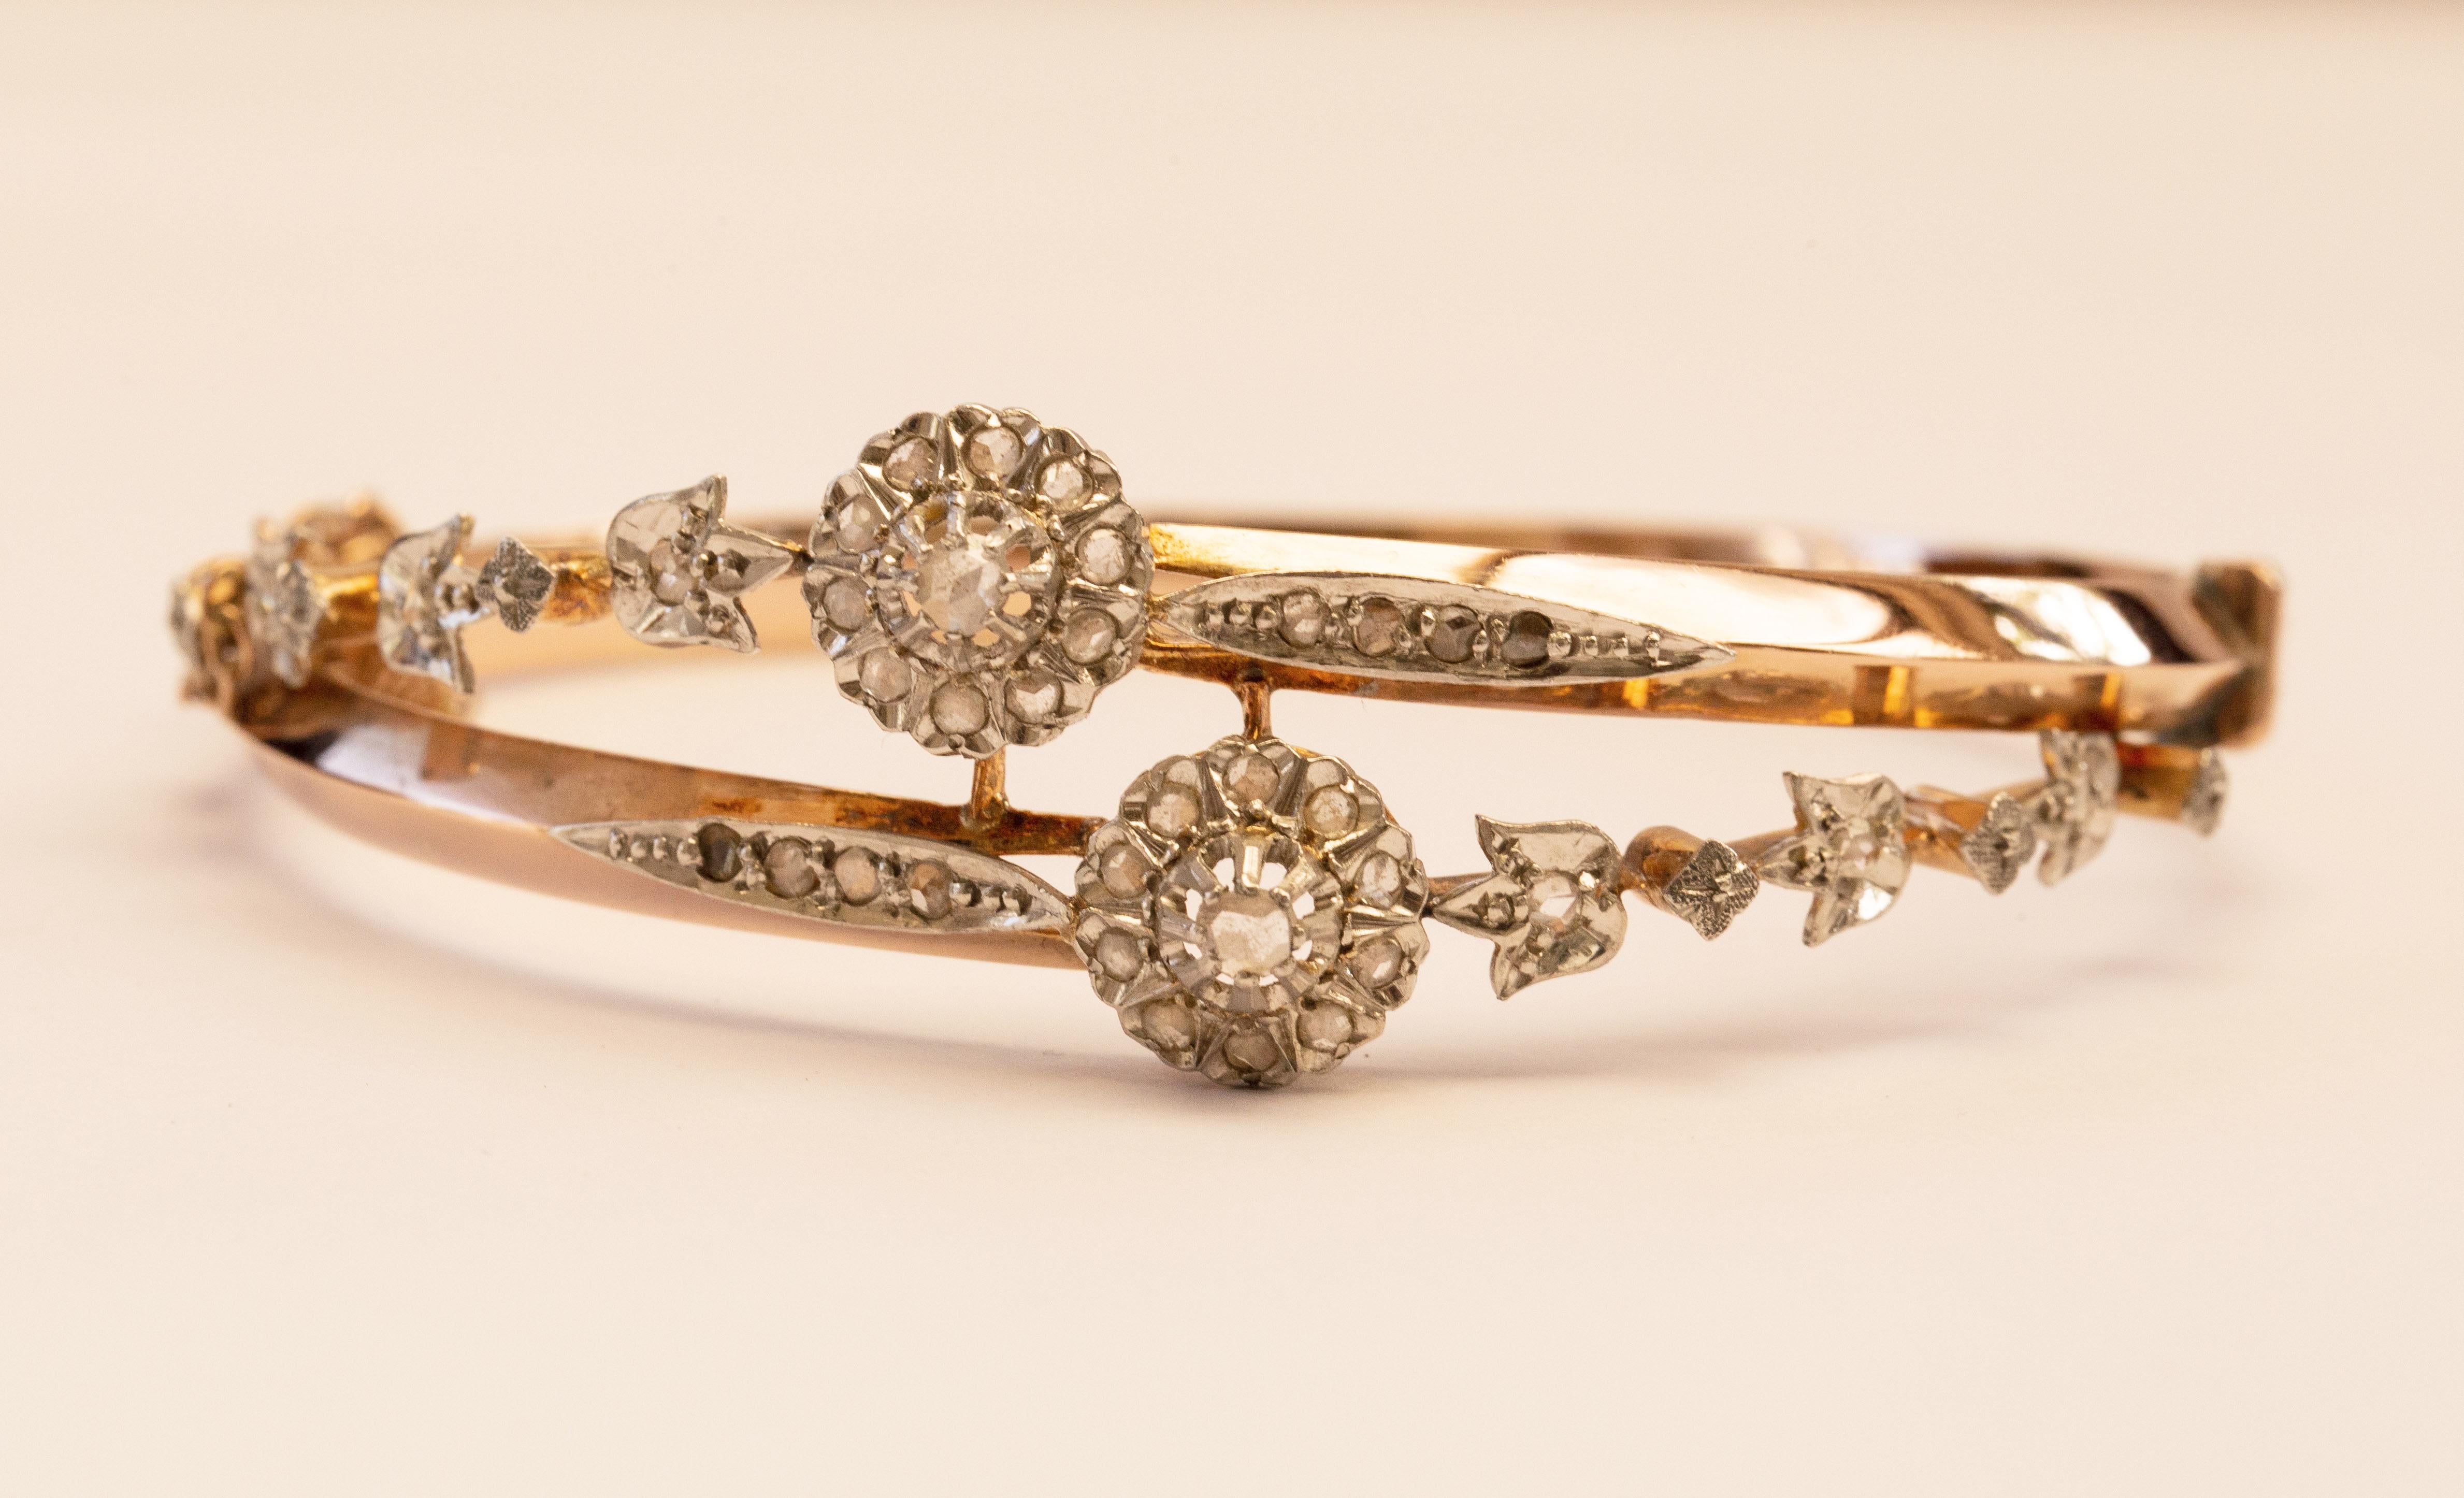 Ein antiker Armreif aus 18 Karat Gelbgold mit 36 in Platin gefassten Diamanten im Rosenschliff, hergestellt um 1900, wahrscheinlich in Frankreich. Das Armband ist mit einem floralen Dekor versehen. Das Armband ist zart, aber dennoch ein Blickfang